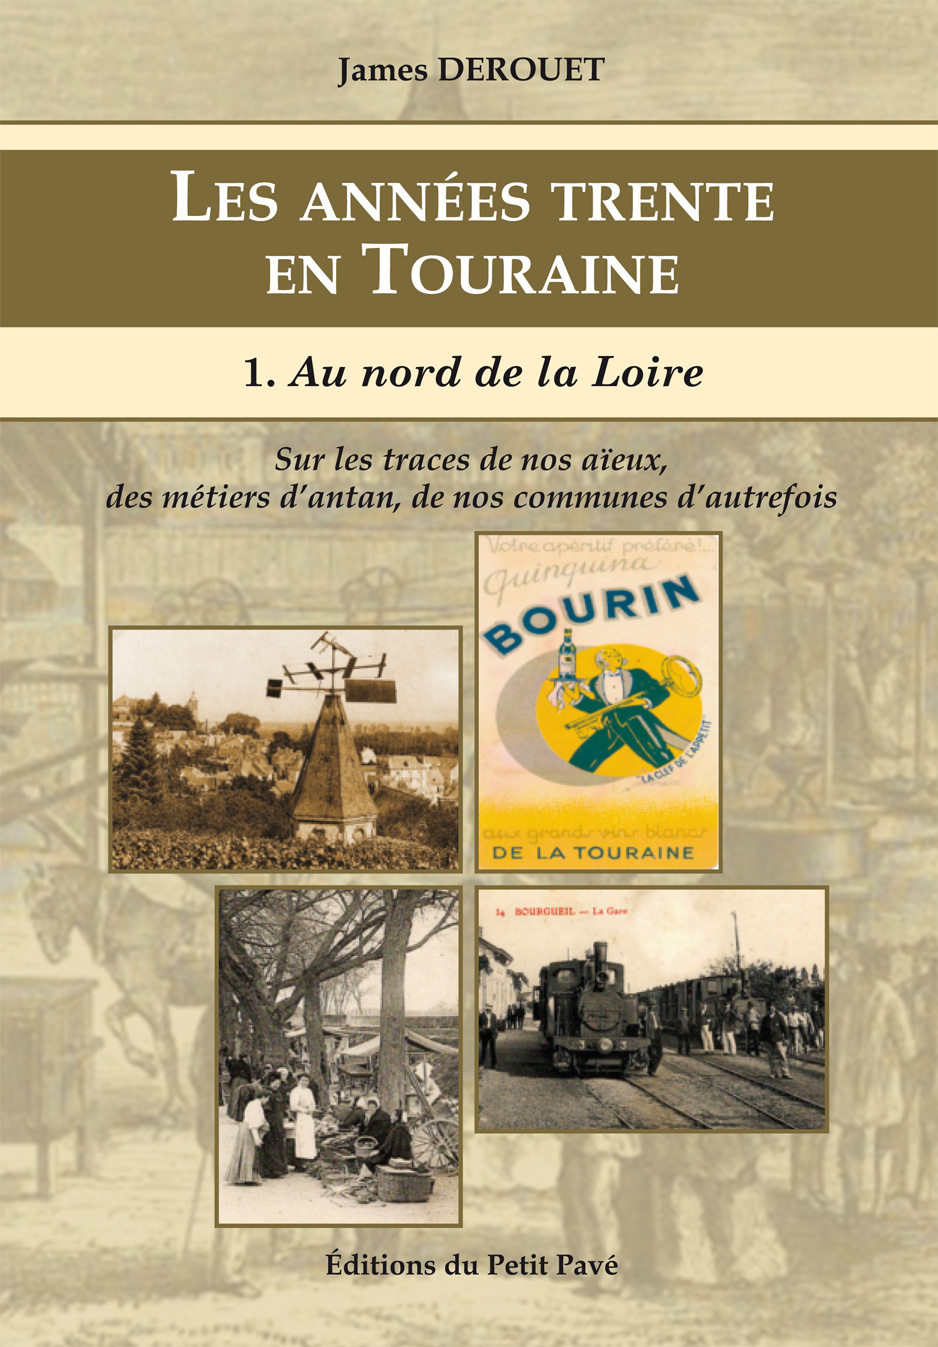 Les années trente en Touraine - Photo les_annees_trente_en_touraine-aux_editions_du_petit_pave-par-_james_derouet.jpg